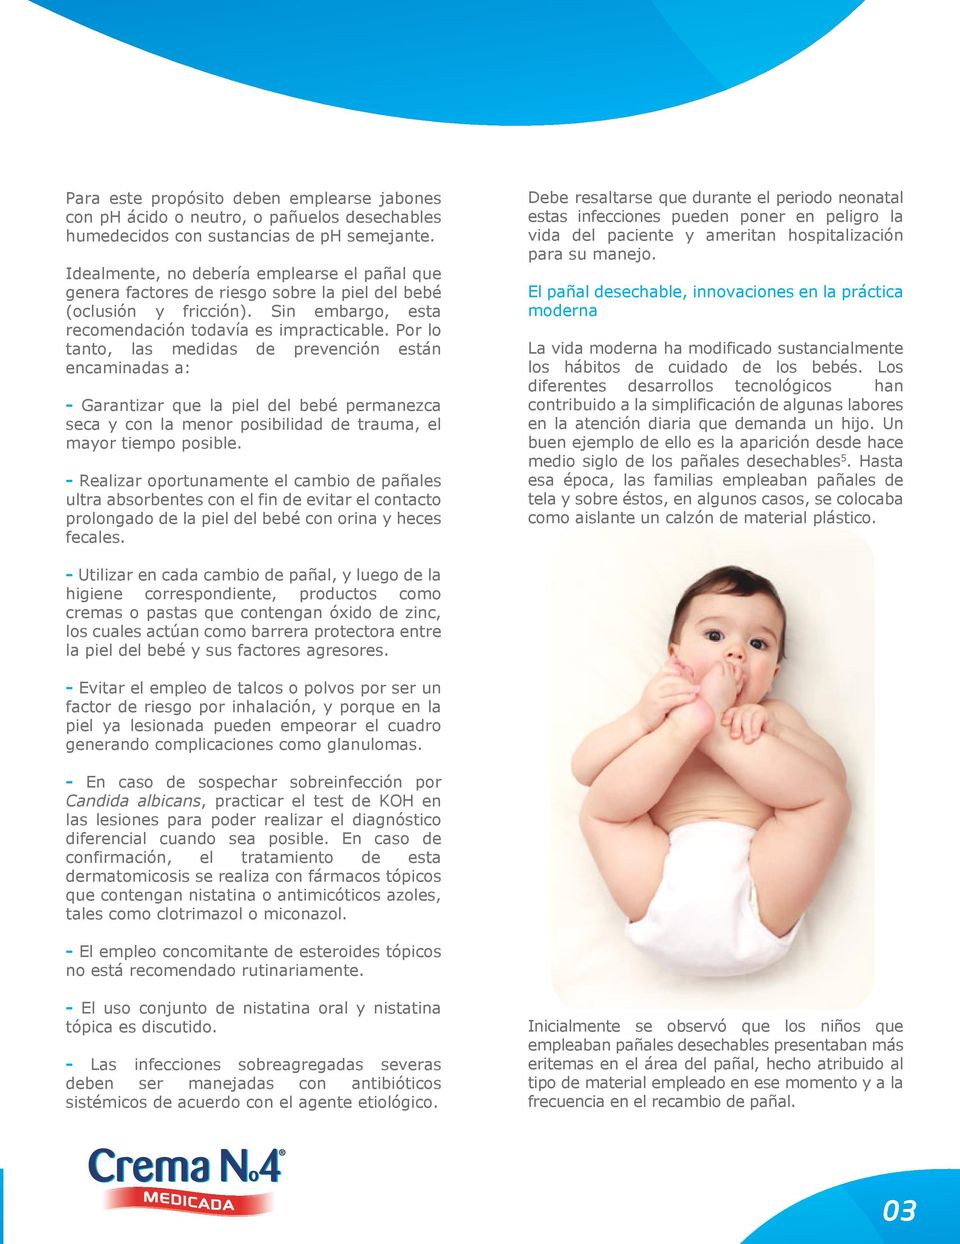 Por lo tanto, las medidas de prevención están encaminadas a: - Garantizar que la piel del bebé permanezca seca y con la menor posibilidad de trauma, el mayor tiempo posible.